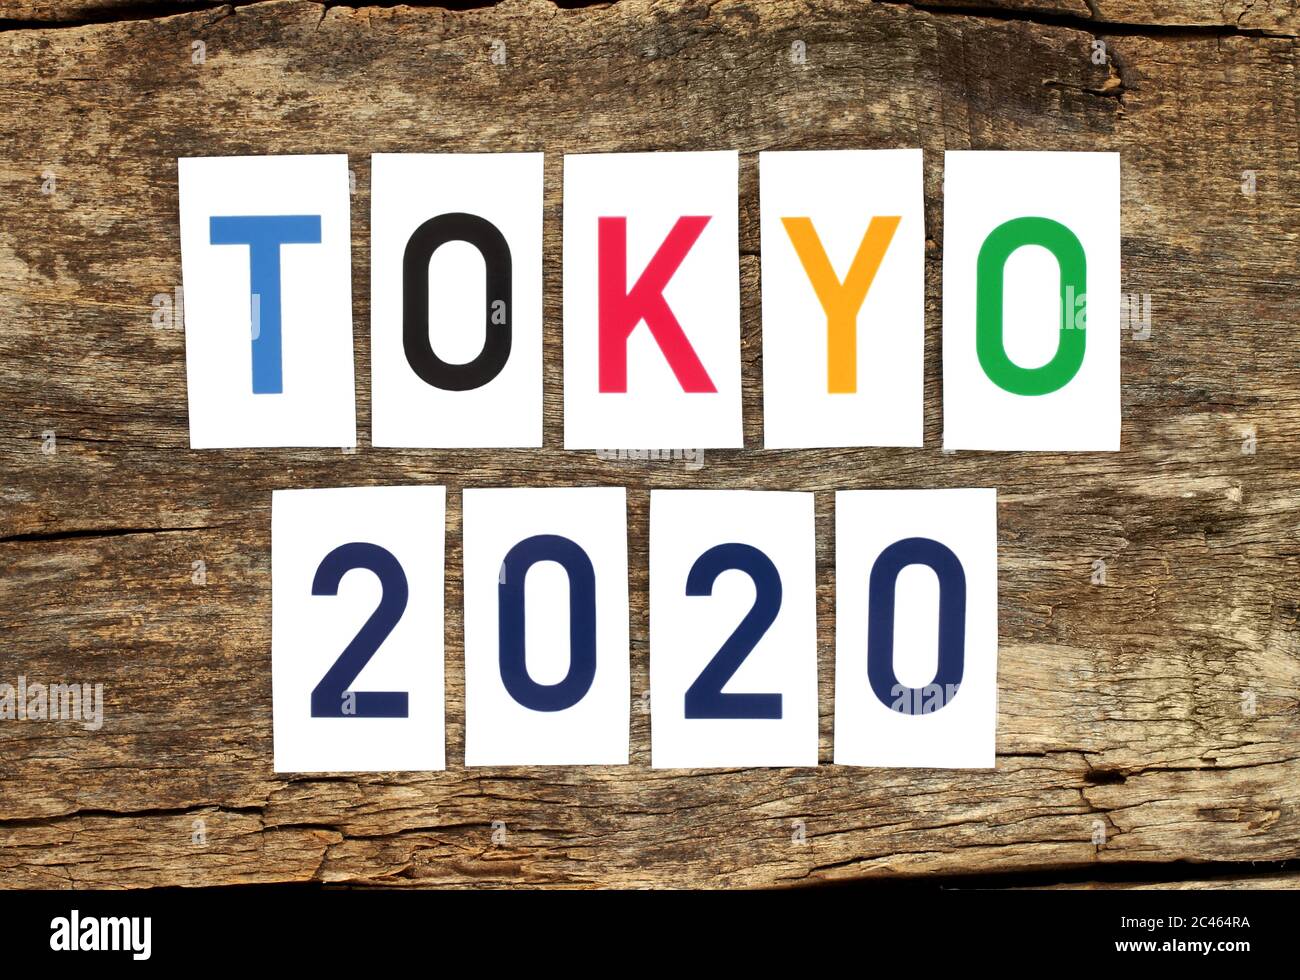 Tokyo 2020 mots imprimés sur papier sur fond en bois ancien gros plan Banque D'Images